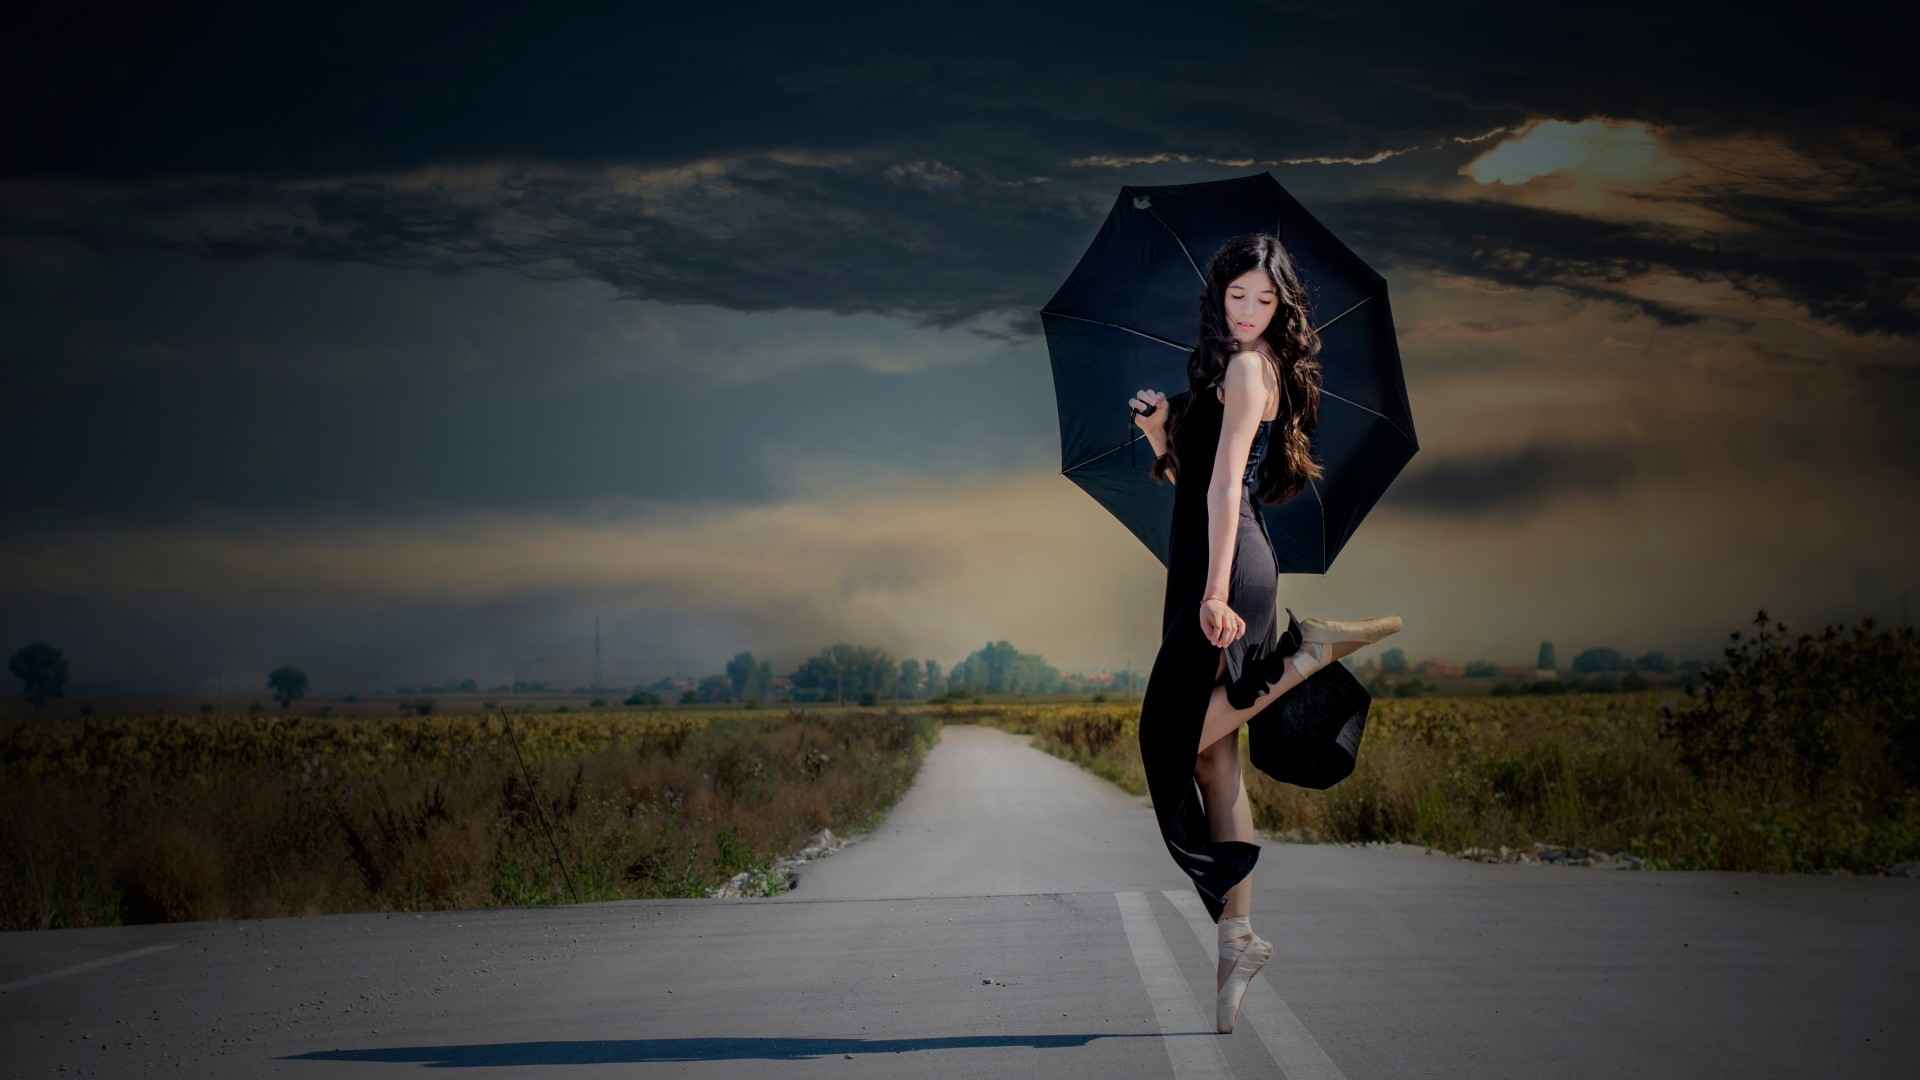 芭蕾舞,美女,足尖,鞋,伞,路上,跳舞,壁纸